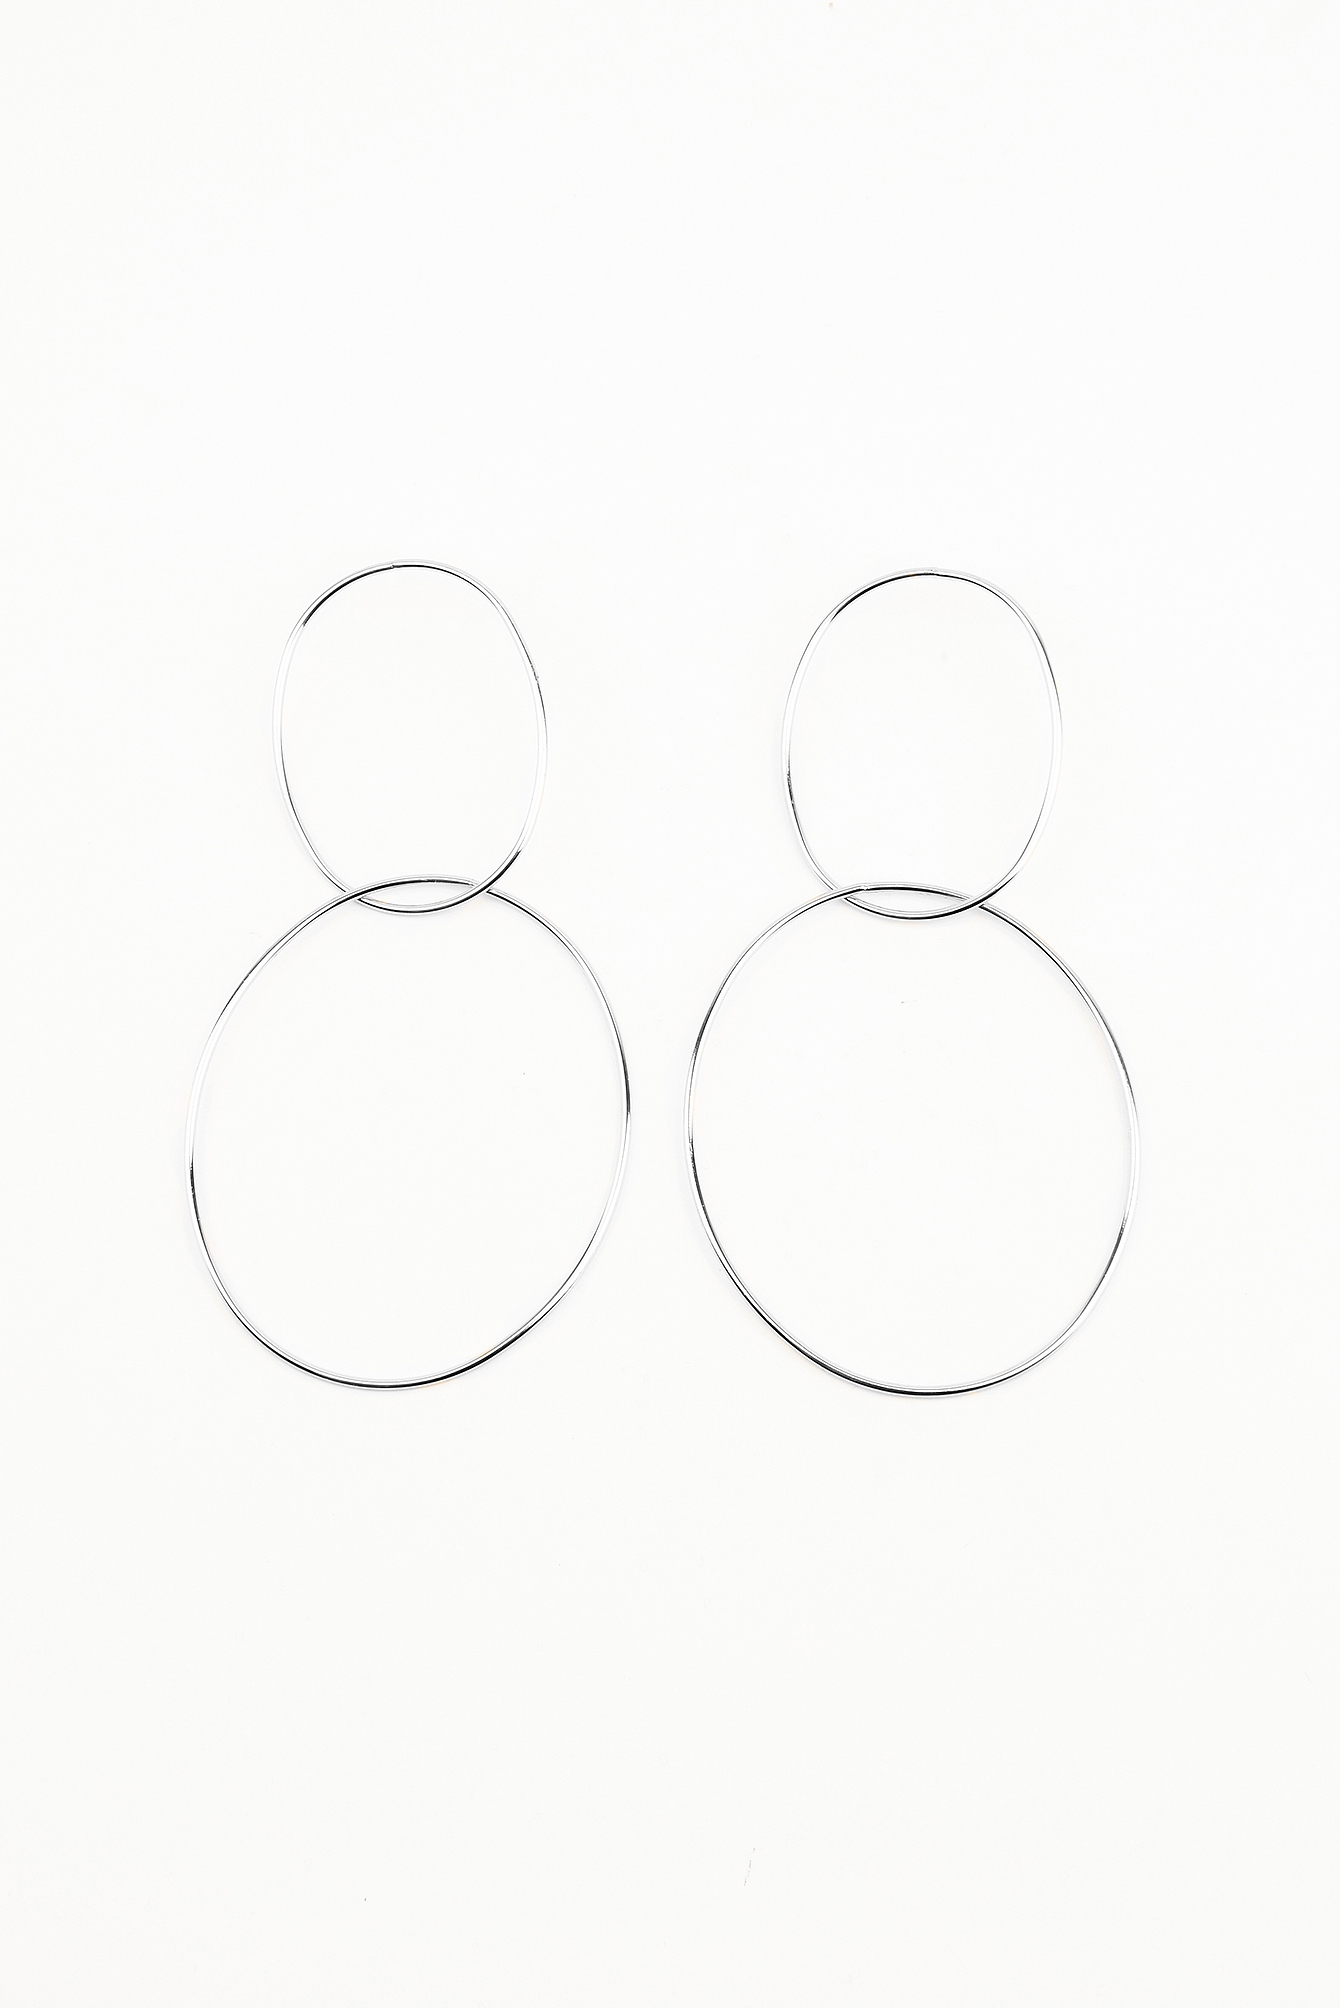 Silver Double Ring Earrings